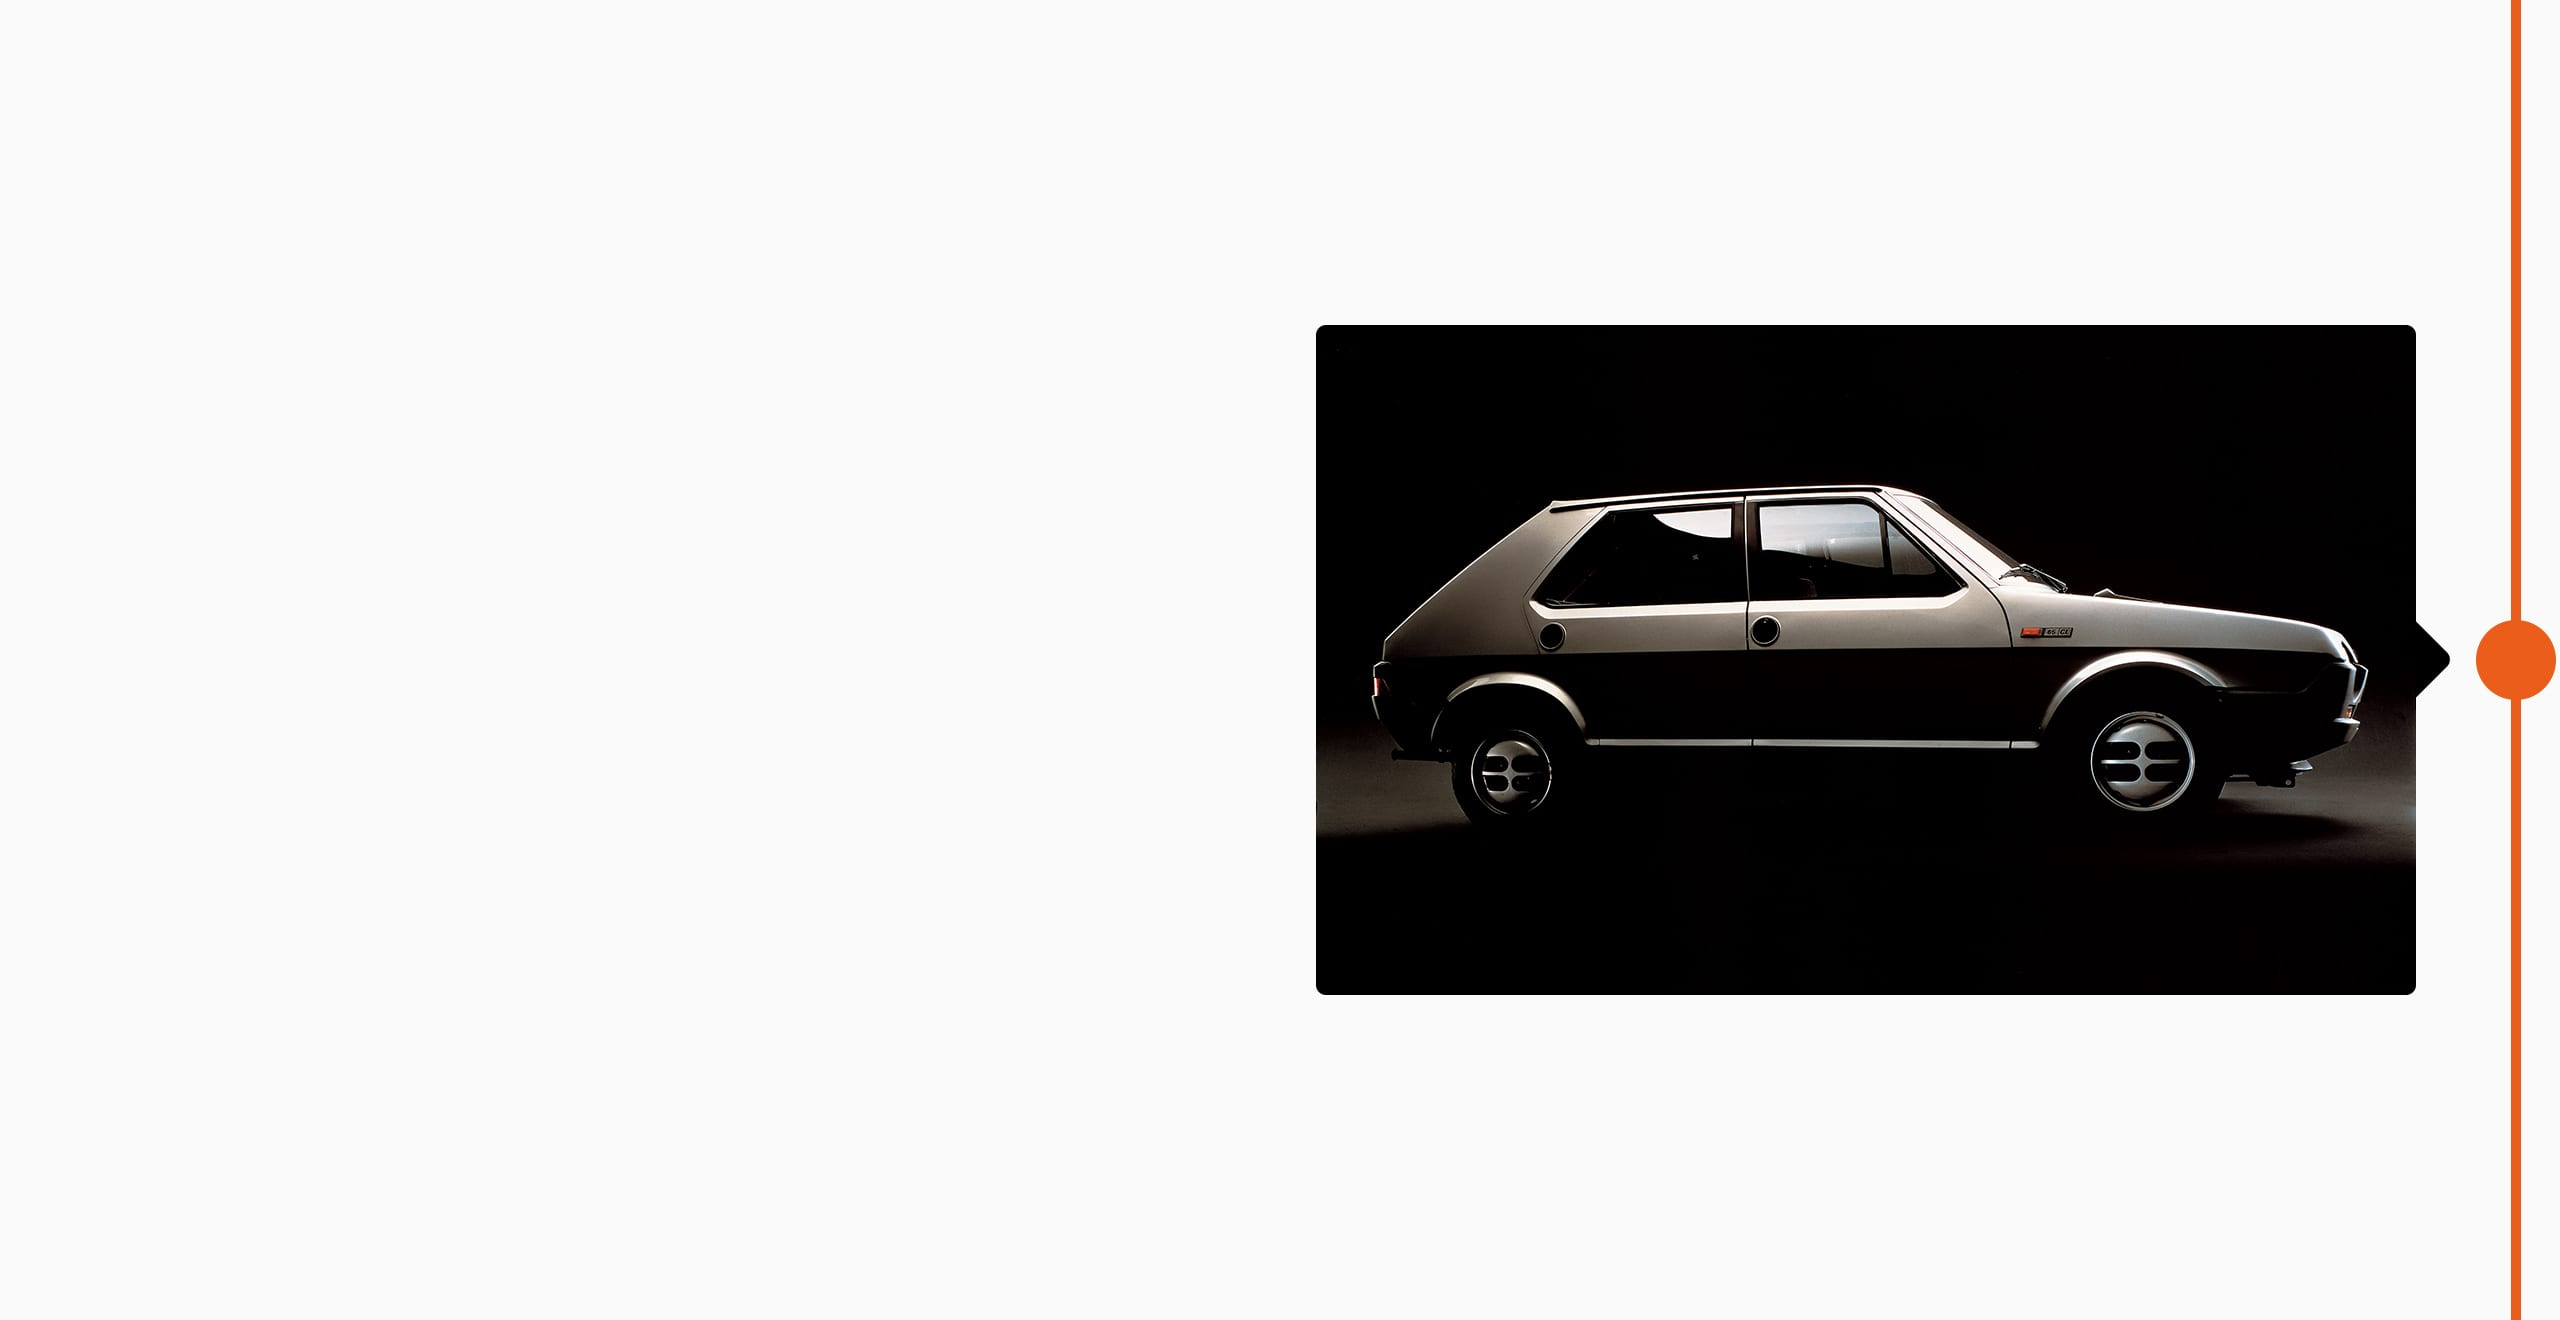  SEATi brändi ajalugu 1979 - SEAT Ritmo uue auto disain